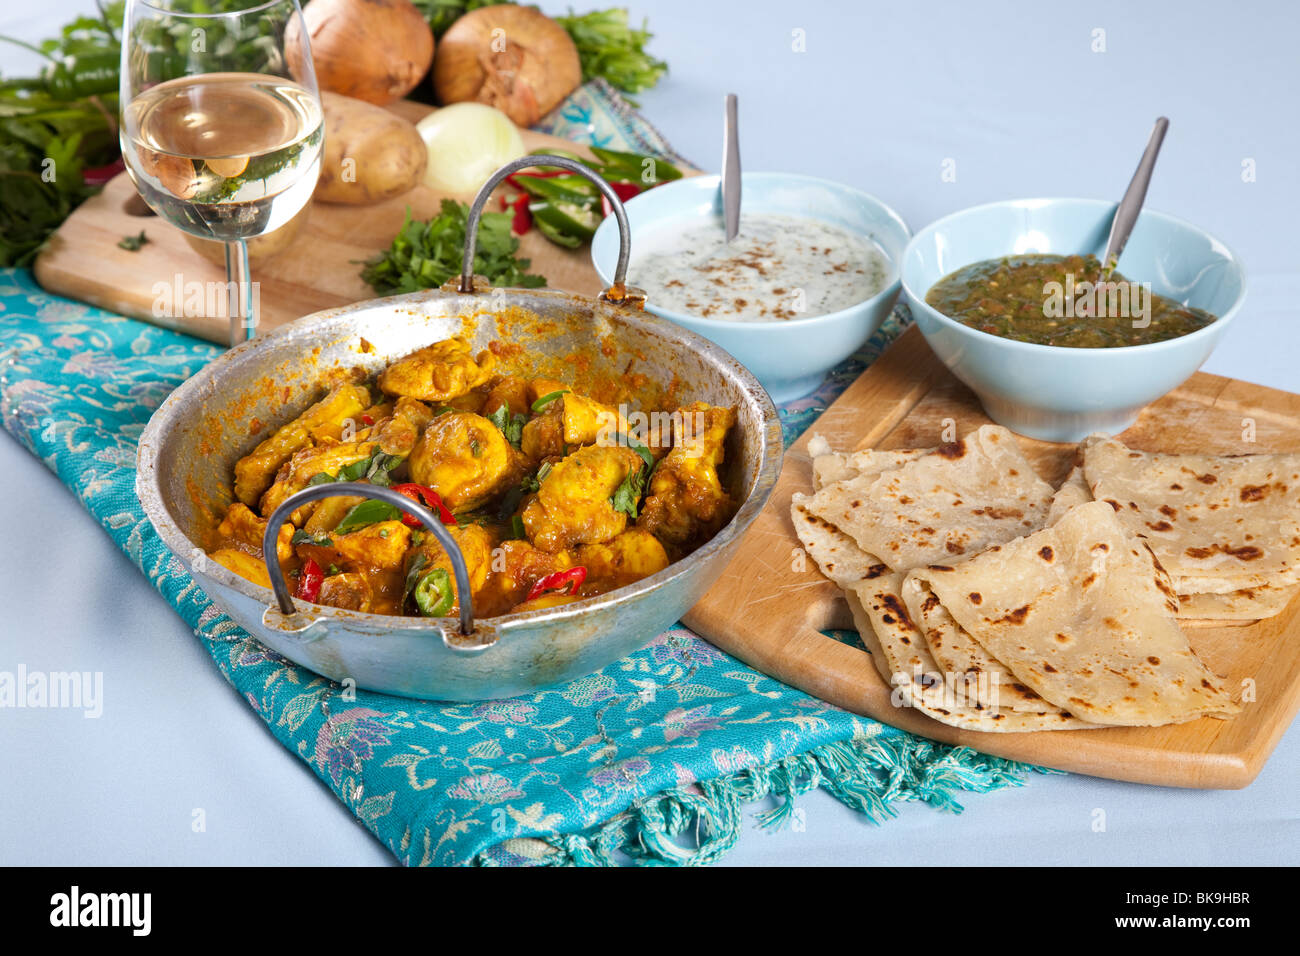 Tabelle mit typischen indischen Gerichten wie indisches Curry, Roti und dips Stockfoto